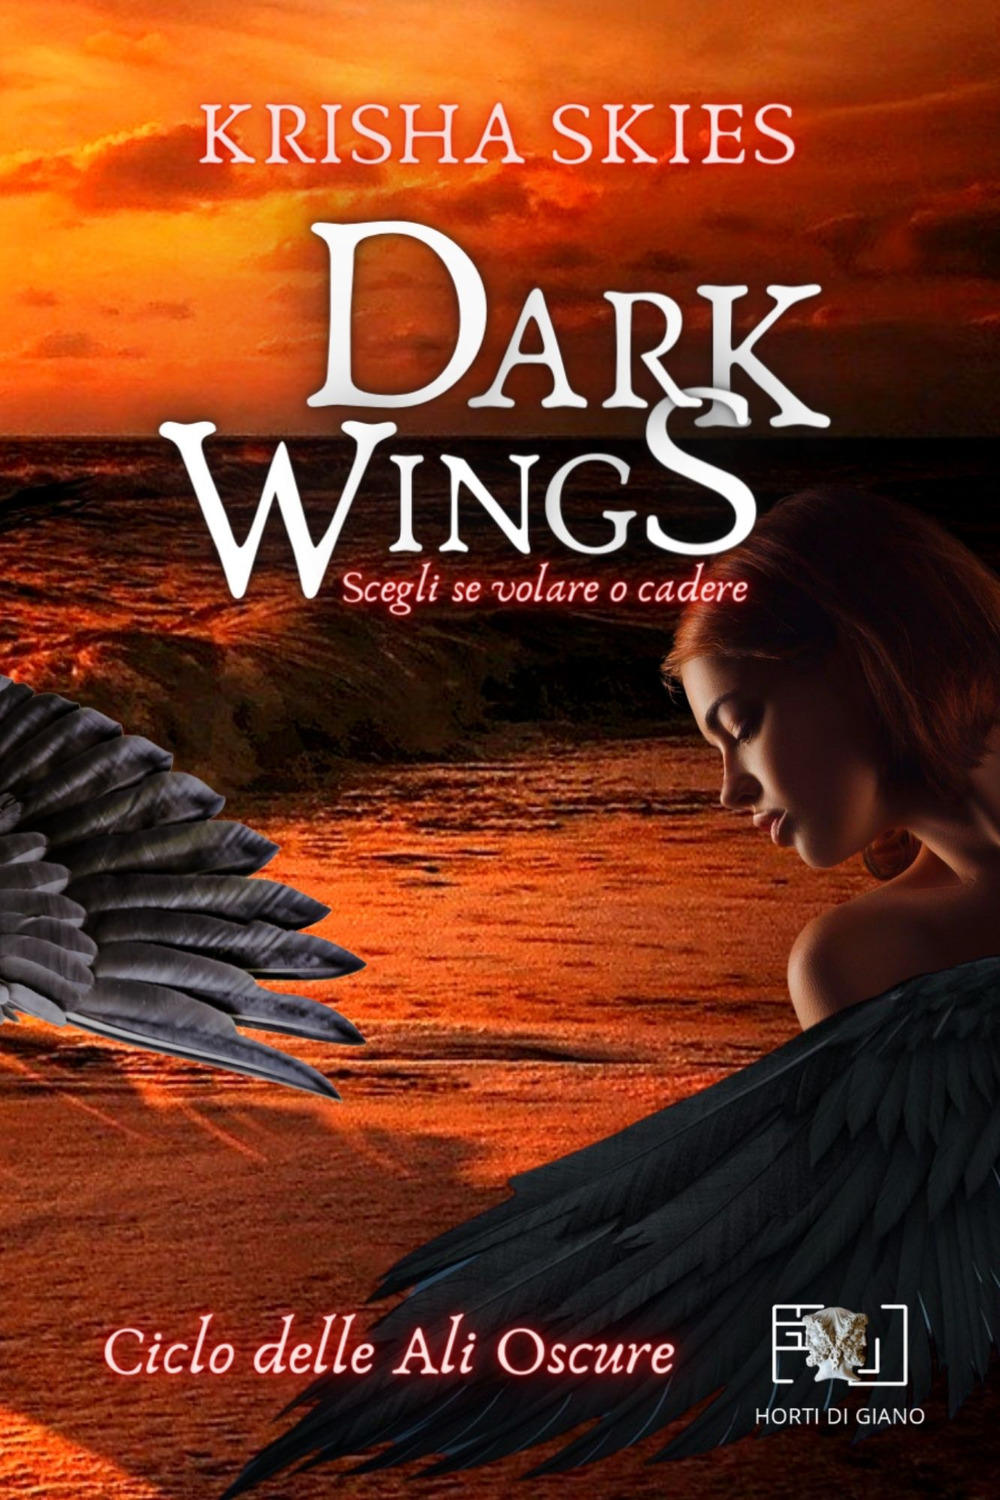 Libri Skies Krisha - Dark Wings NUOVO SIGILLATO, EDIZIONE DEL 05/03/2021 SUBITO DISPONIBILE